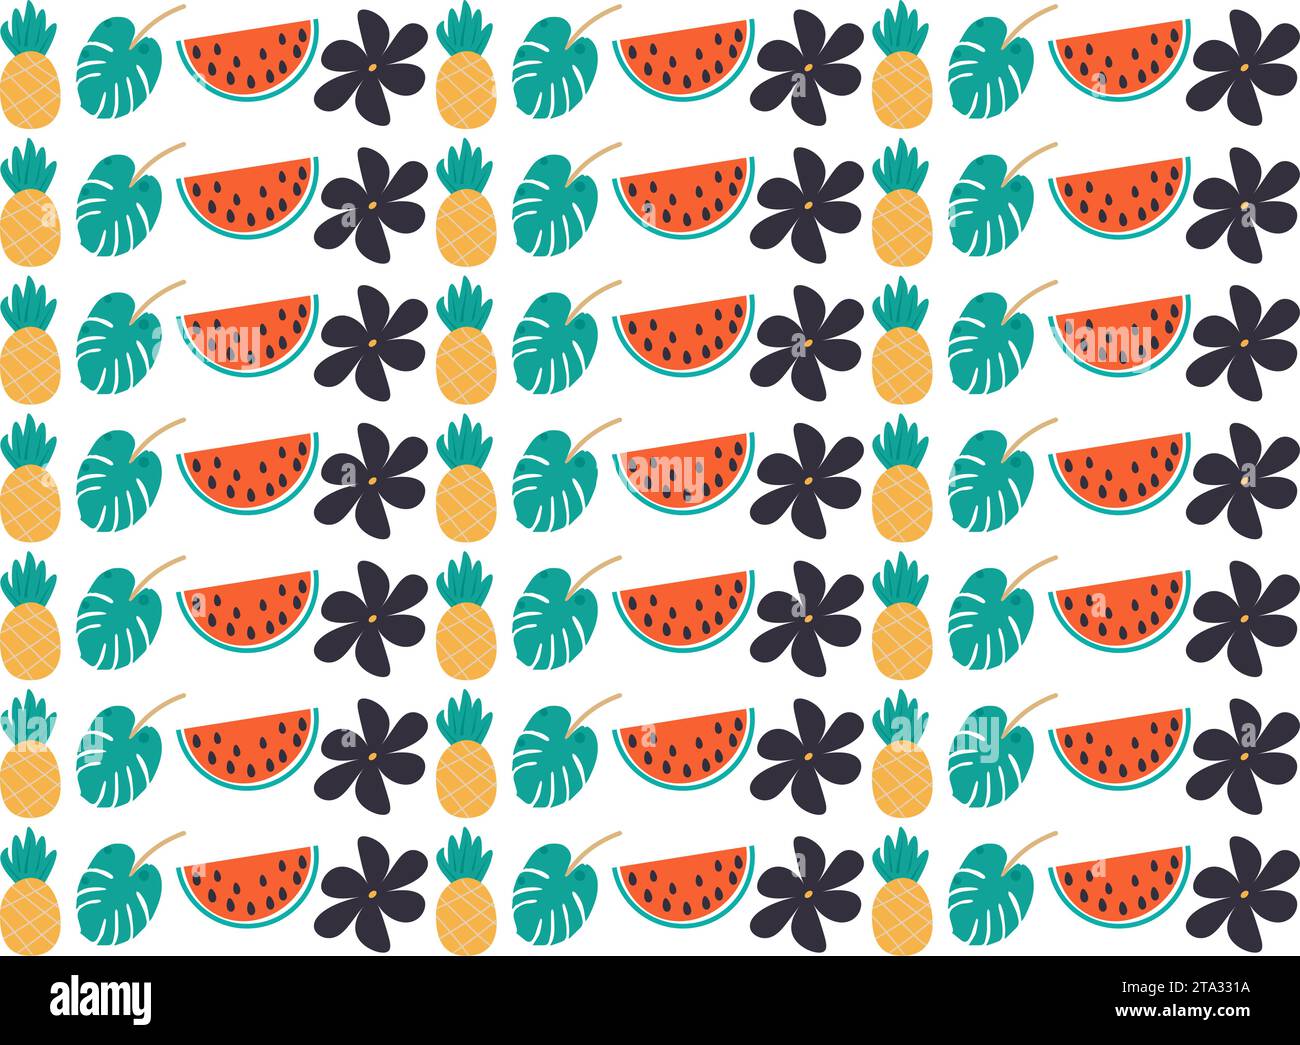 Wassermelone Vektor-Illustration Ananas Hintergrund MUSTER tropisches Blatt und Blume Stock Vektor